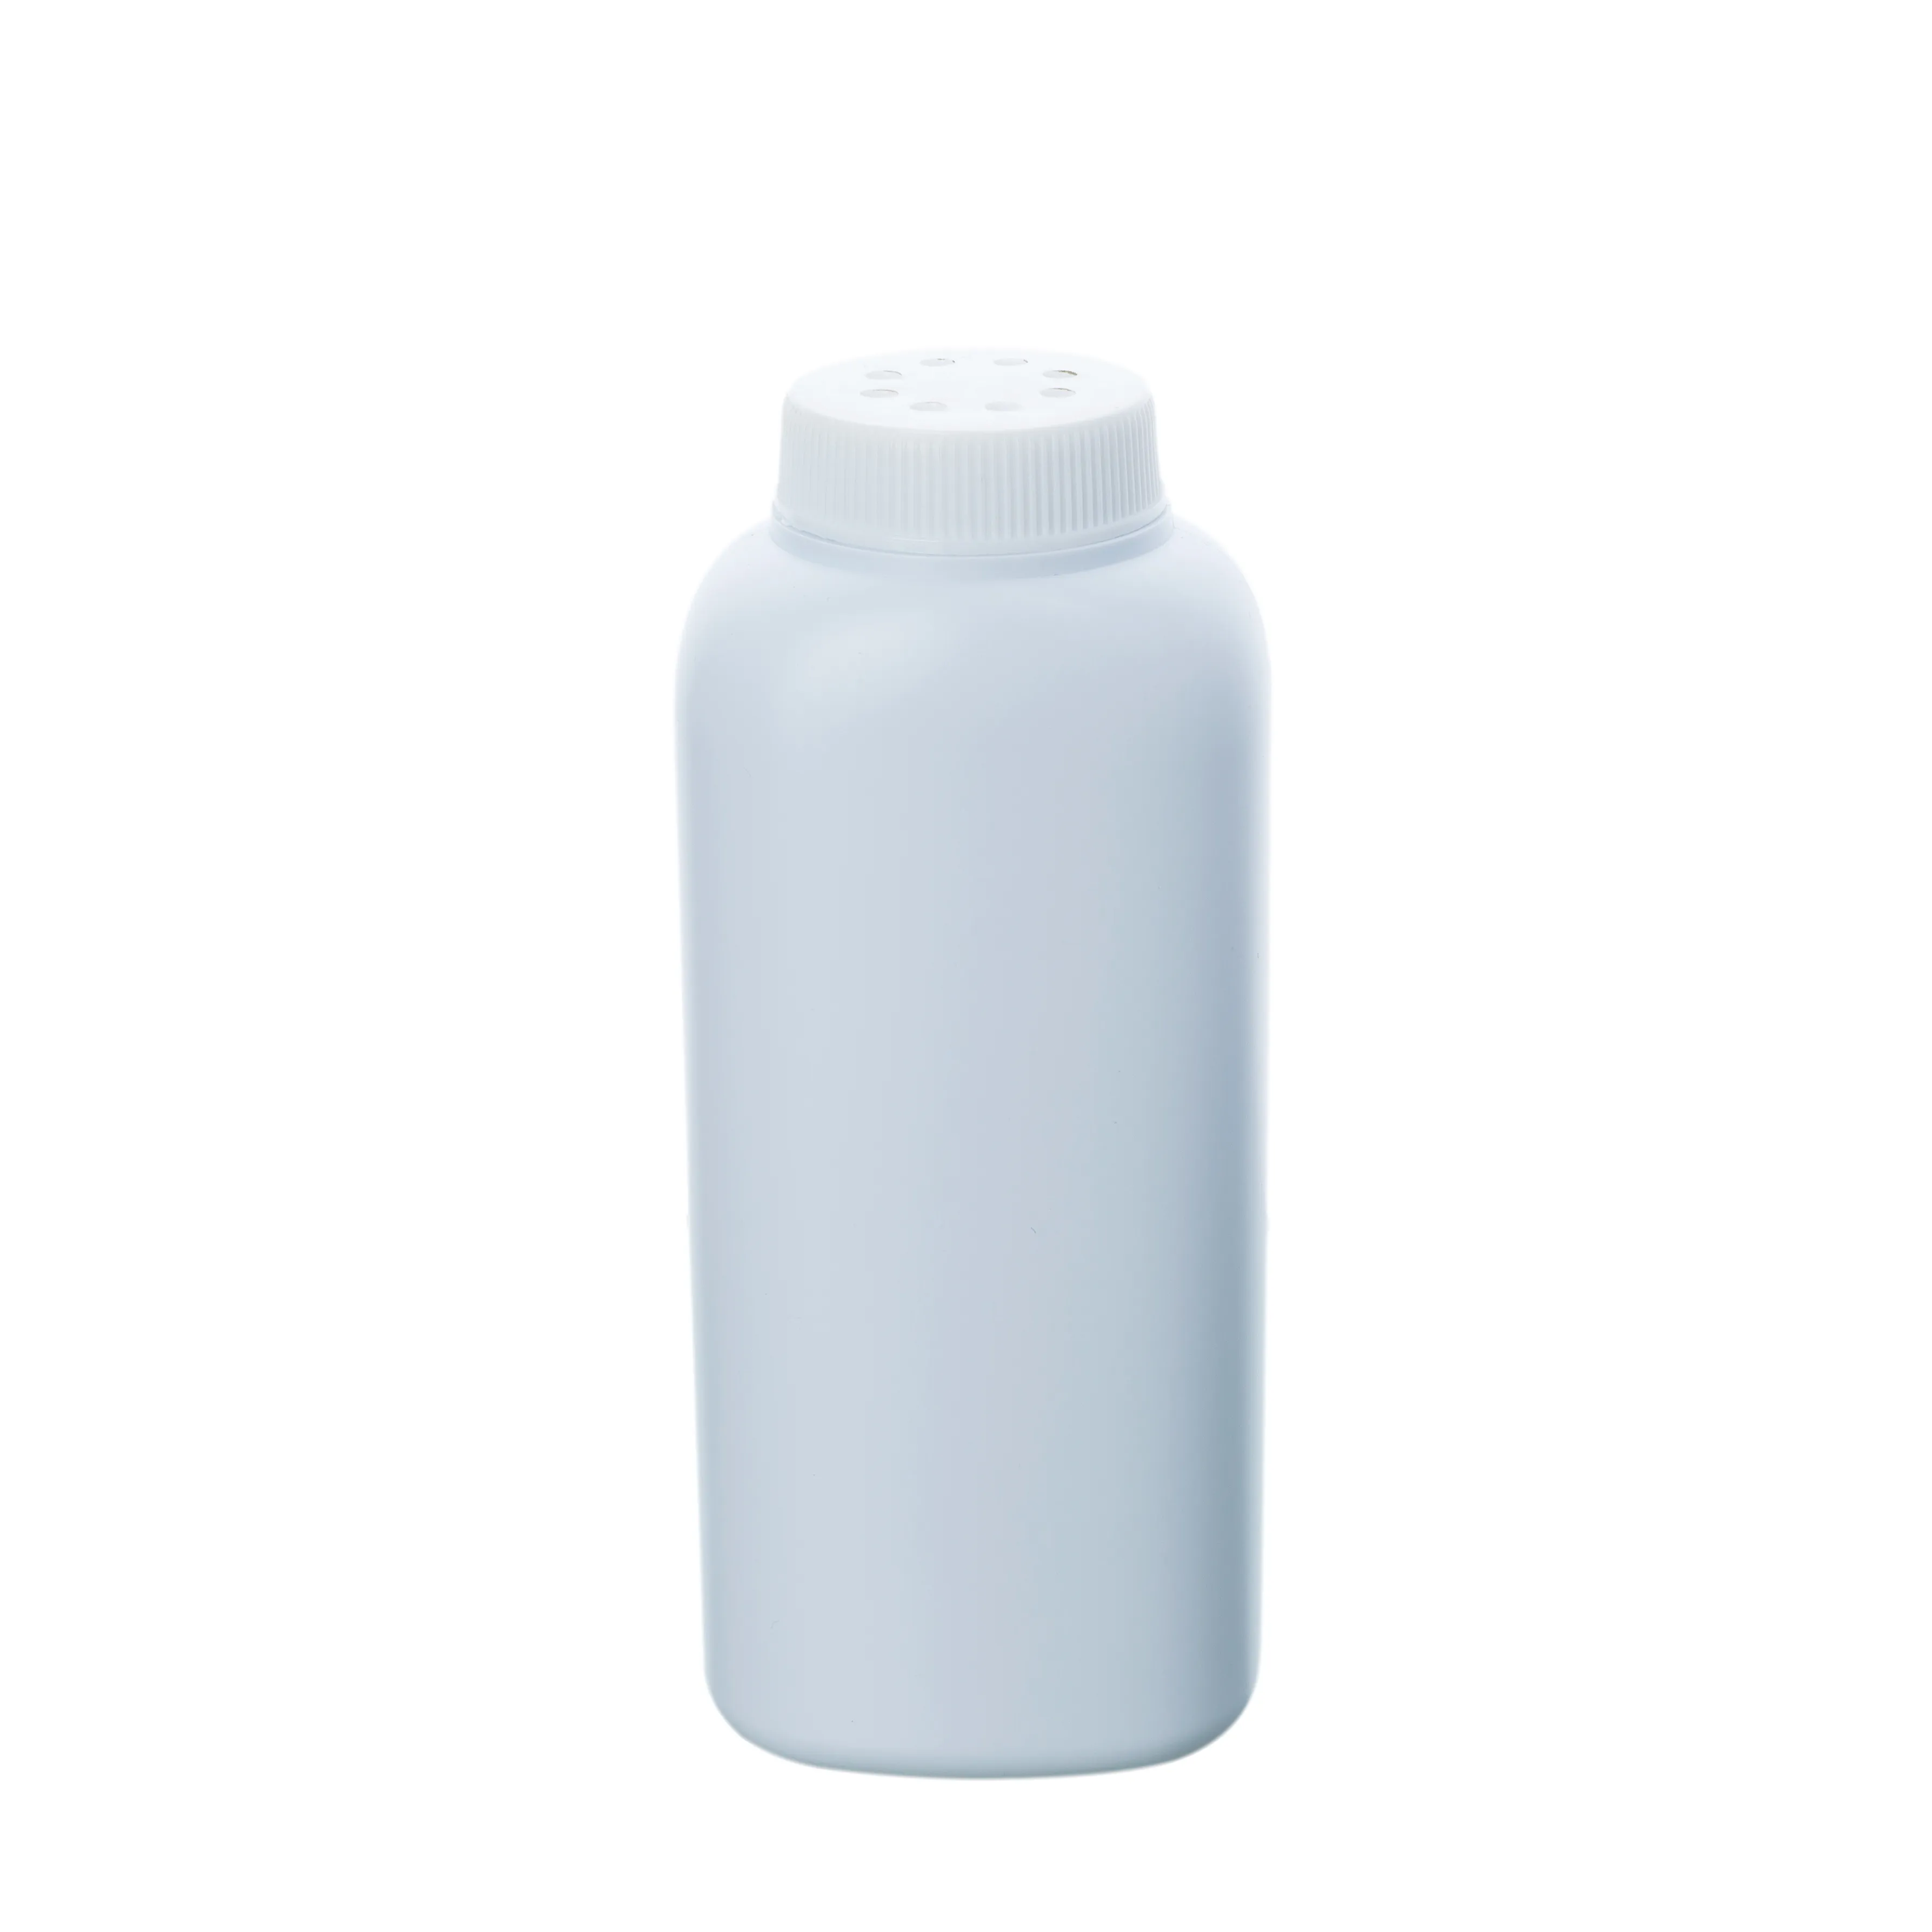 100g kare vidalı kapak delikli bebek talk pudra HDPE plastik boş beyaz şişe